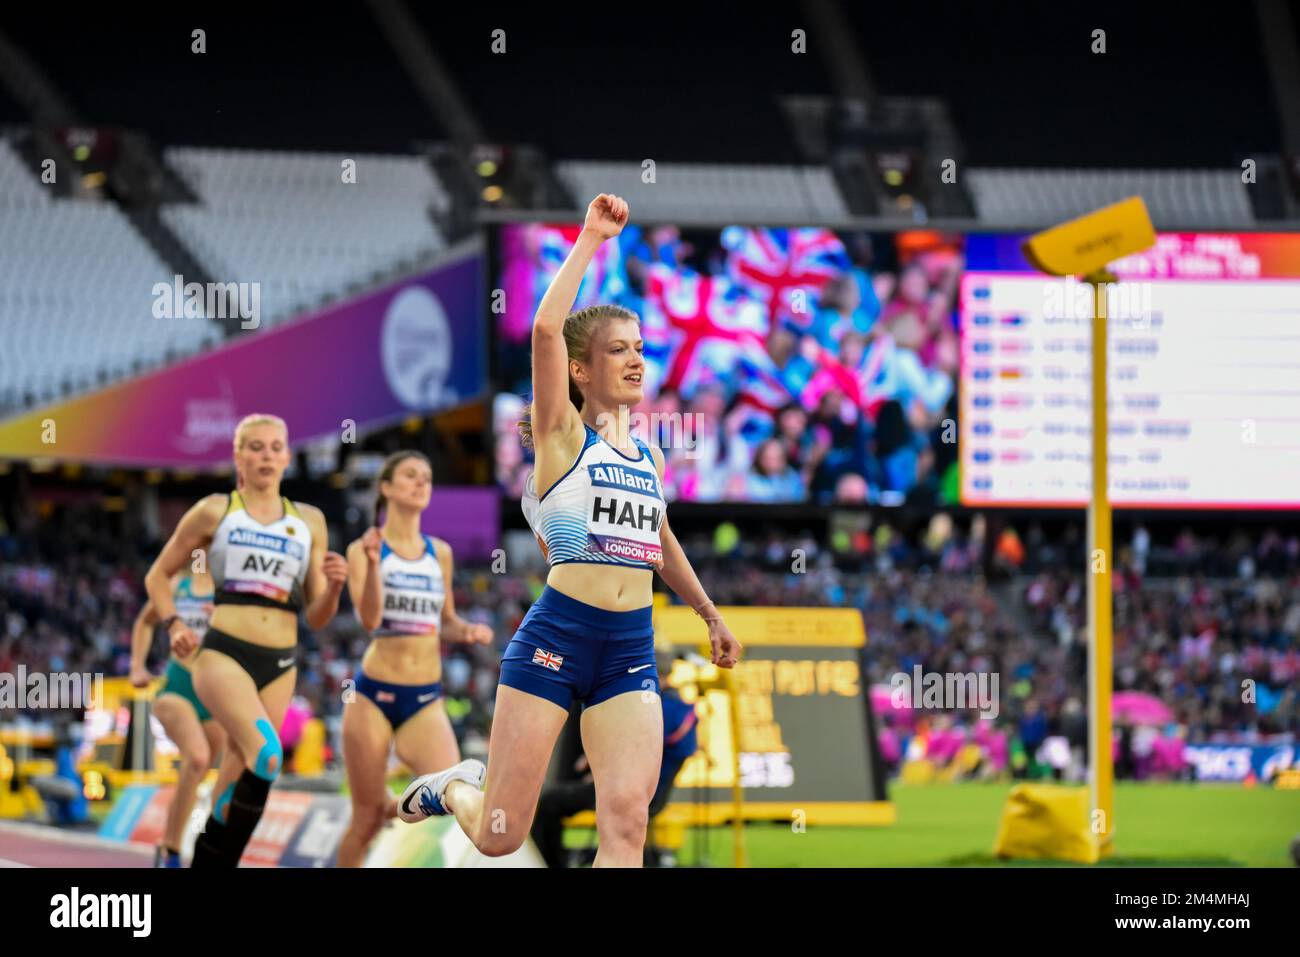 Sophie Hahn célèbre la victoire de l'or en 100m T38 aux Championnats du monde d'athlétisme Para au stade de Londres, 2017. Vainqueur britannique Banque D'Images